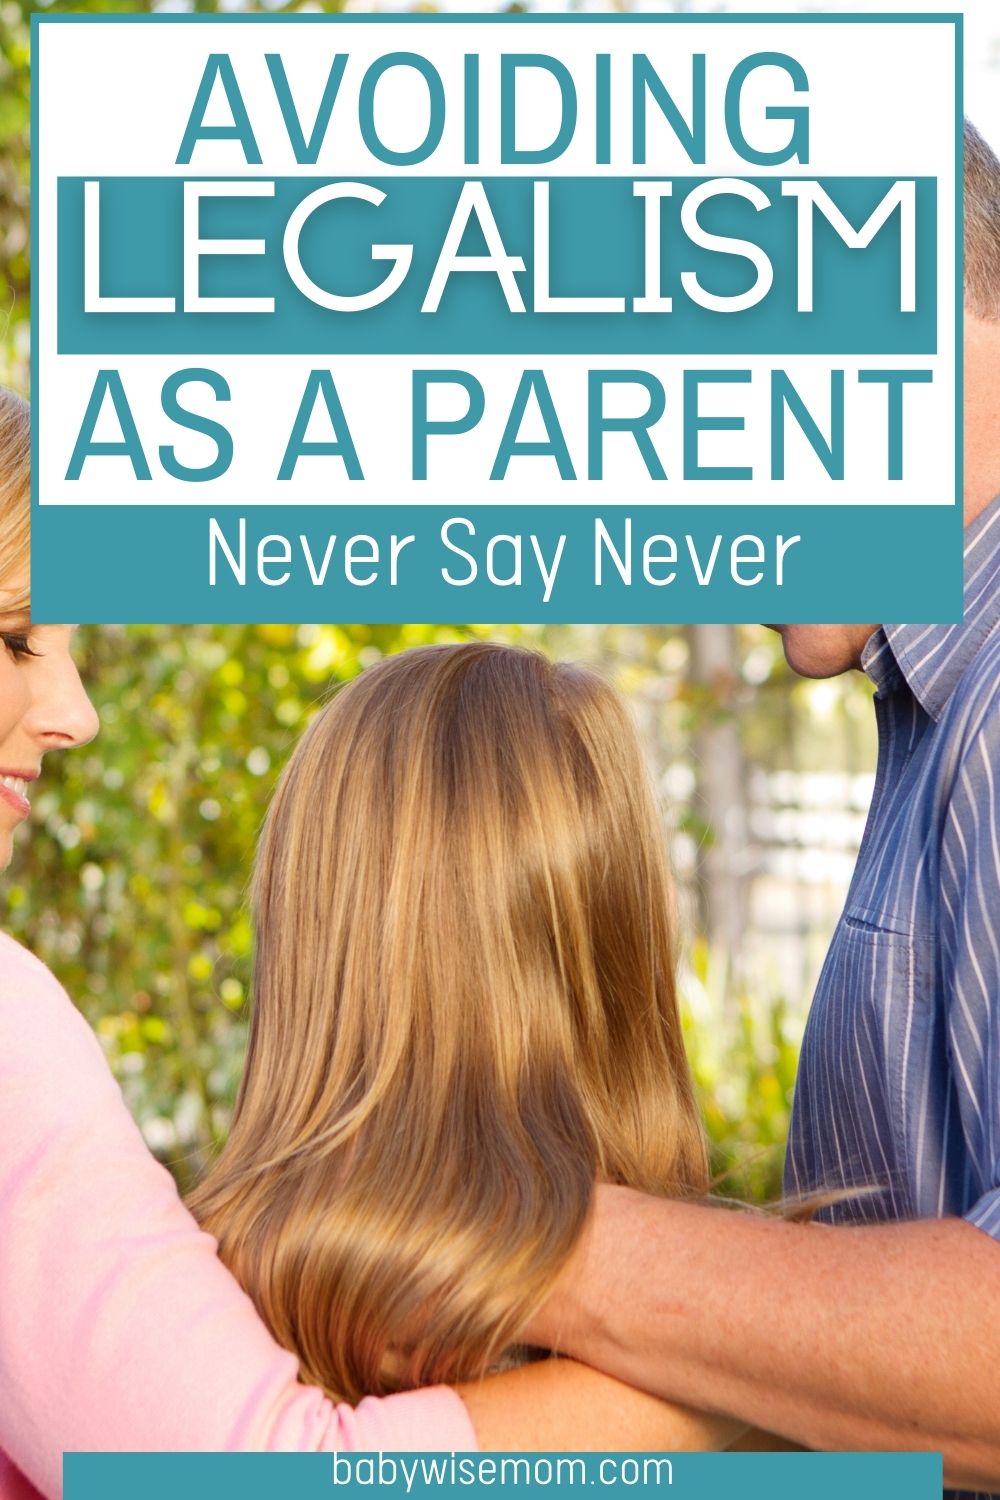 Avoiding legalism as a parent